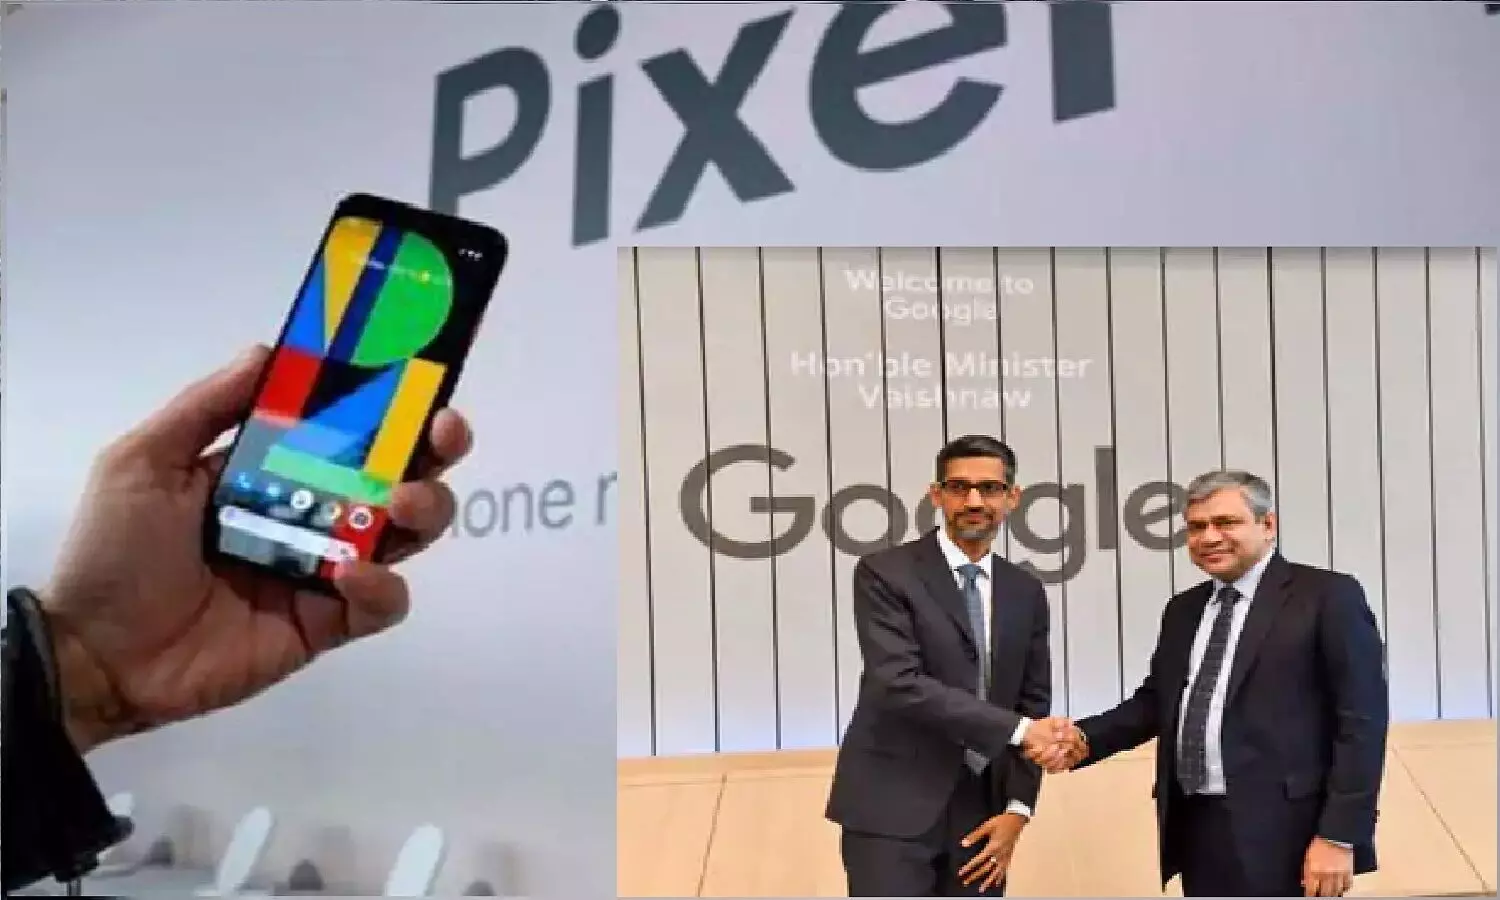 भारत में होगा Google Pixel का प्रोडक्शन! सप्लायर्स की तलाश में जुटा गूगल